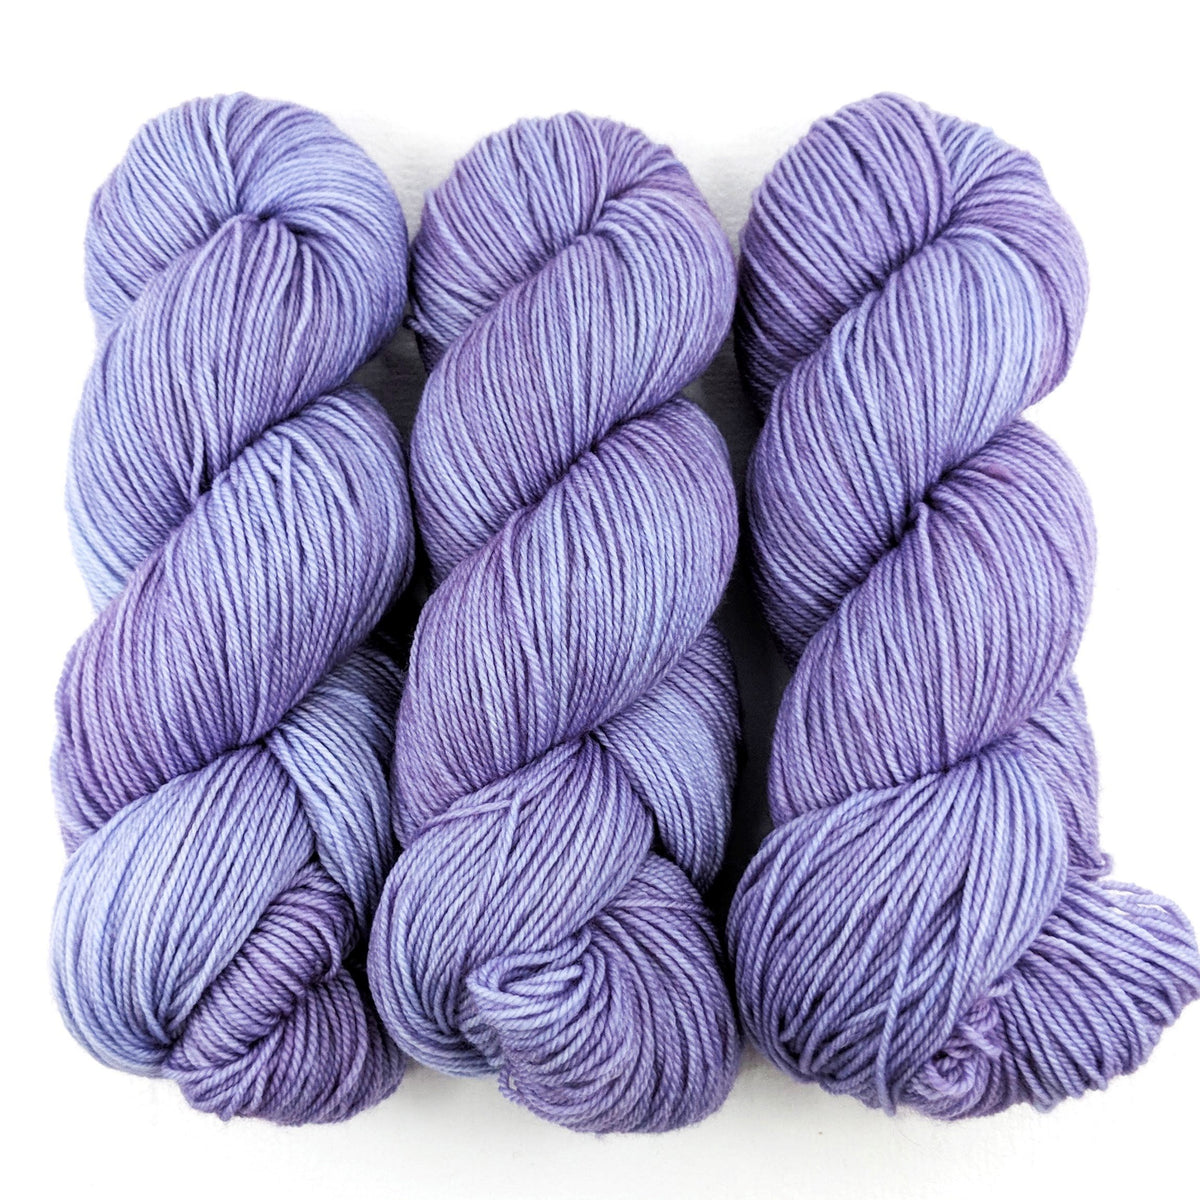 English Lavender - Little Nettle Soft Fingering - Dyed Stock